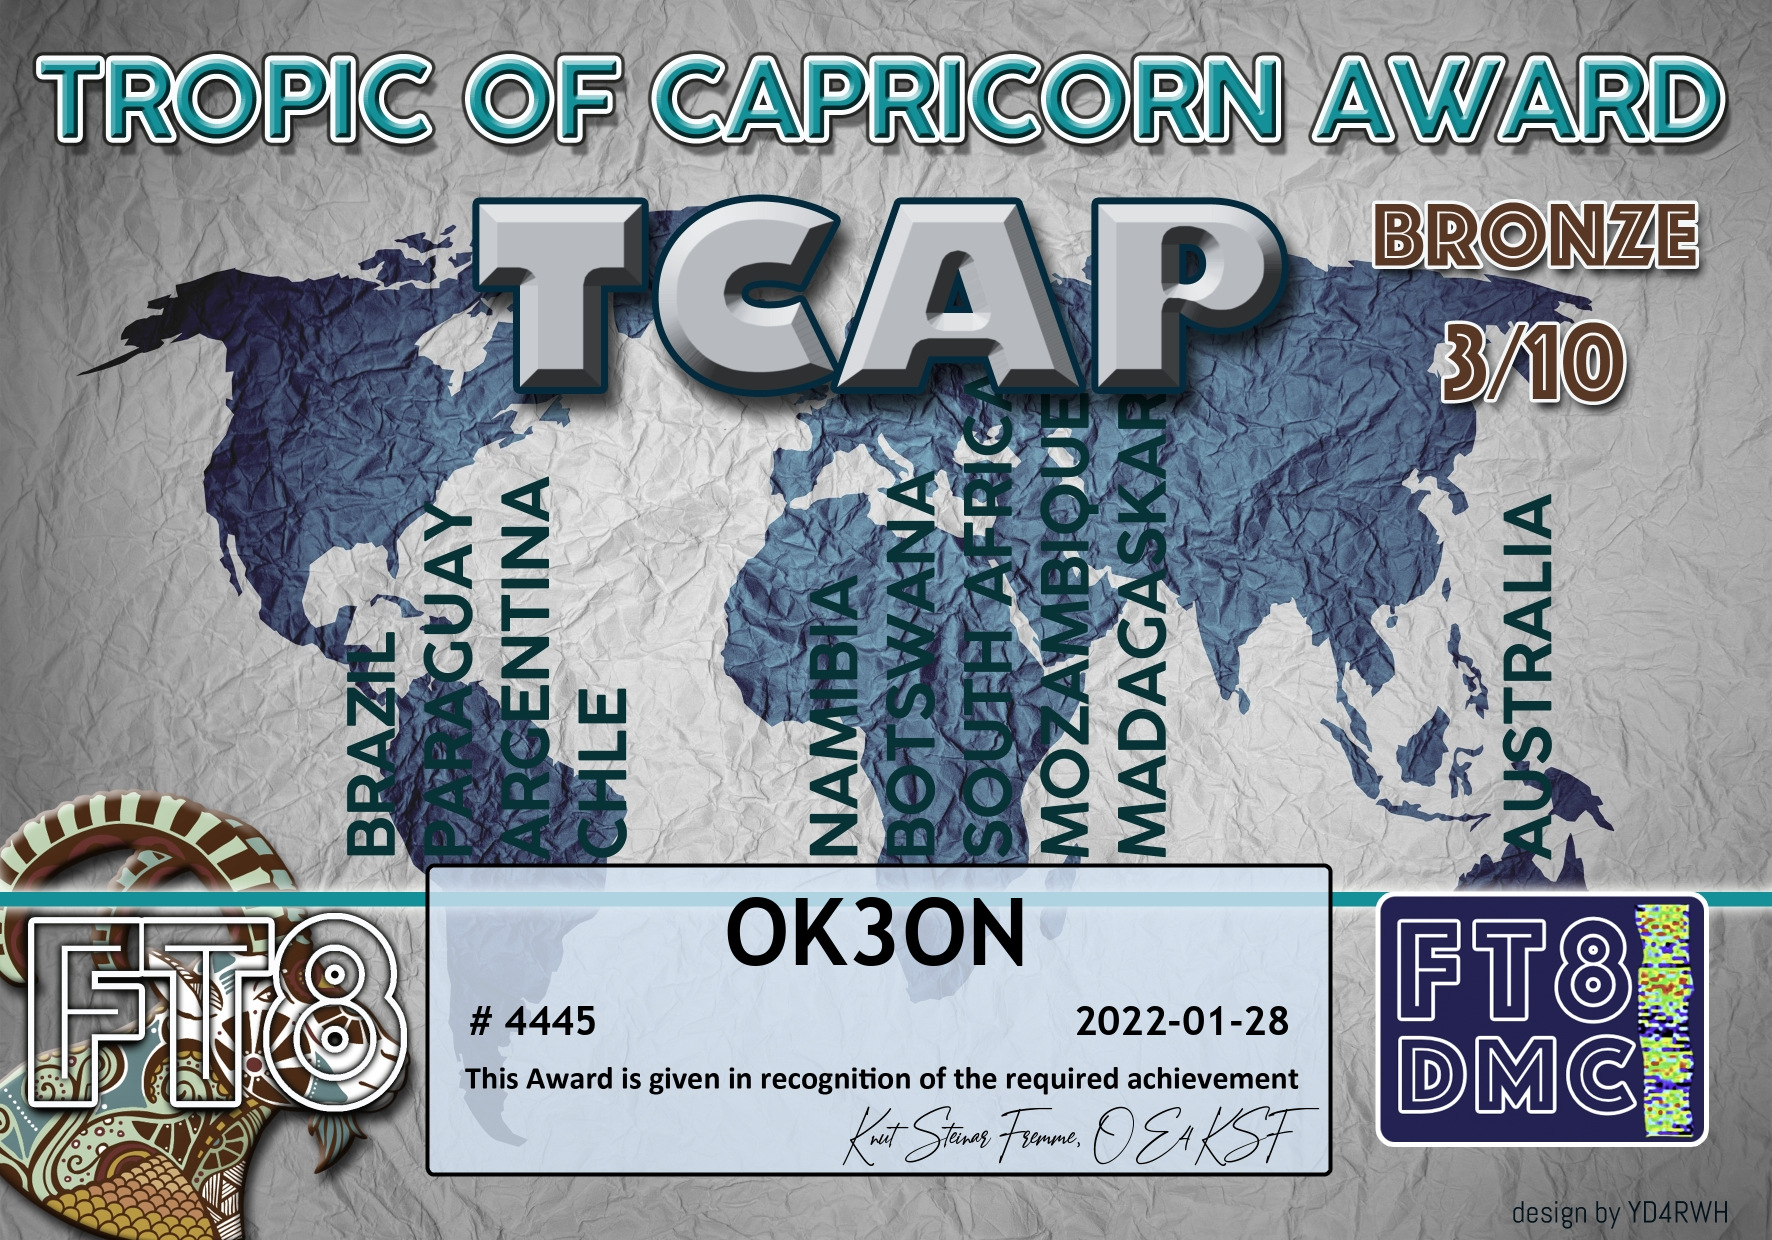 awards/OK3ON-TCAP-BRONZE_FT8DMC.jpg